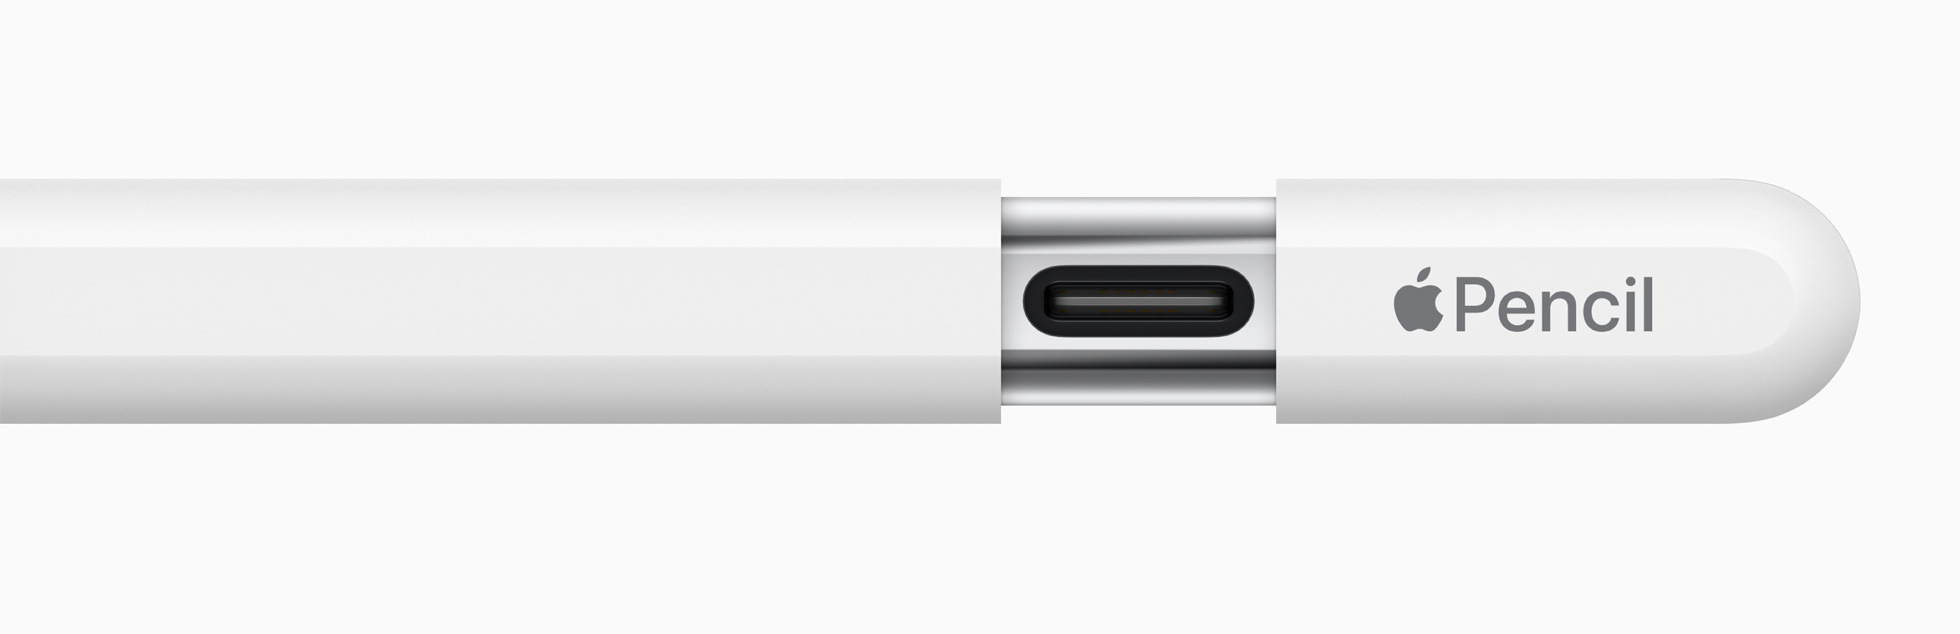 Новый Apple Pencil будет иметь тактильную обратную связь